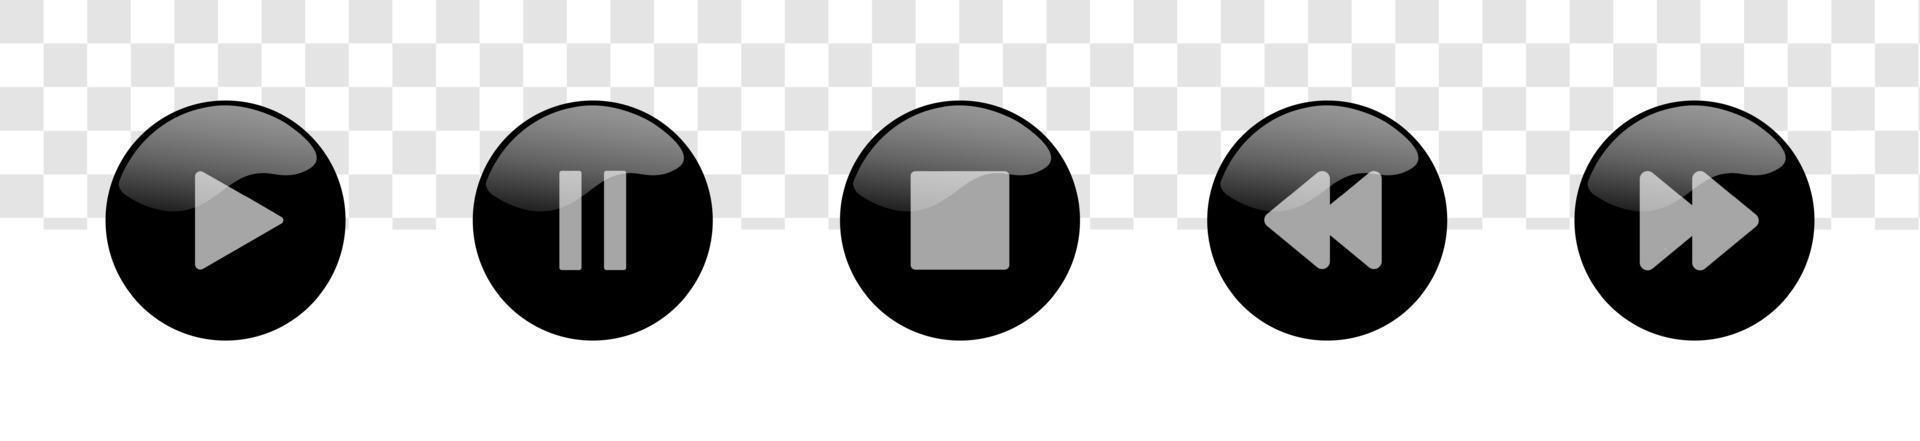 jeu d'icônes de bouton de lecteur multimédia. symbole de navigation de lecteur vidéo et audio sur la couleur noire. vecteur